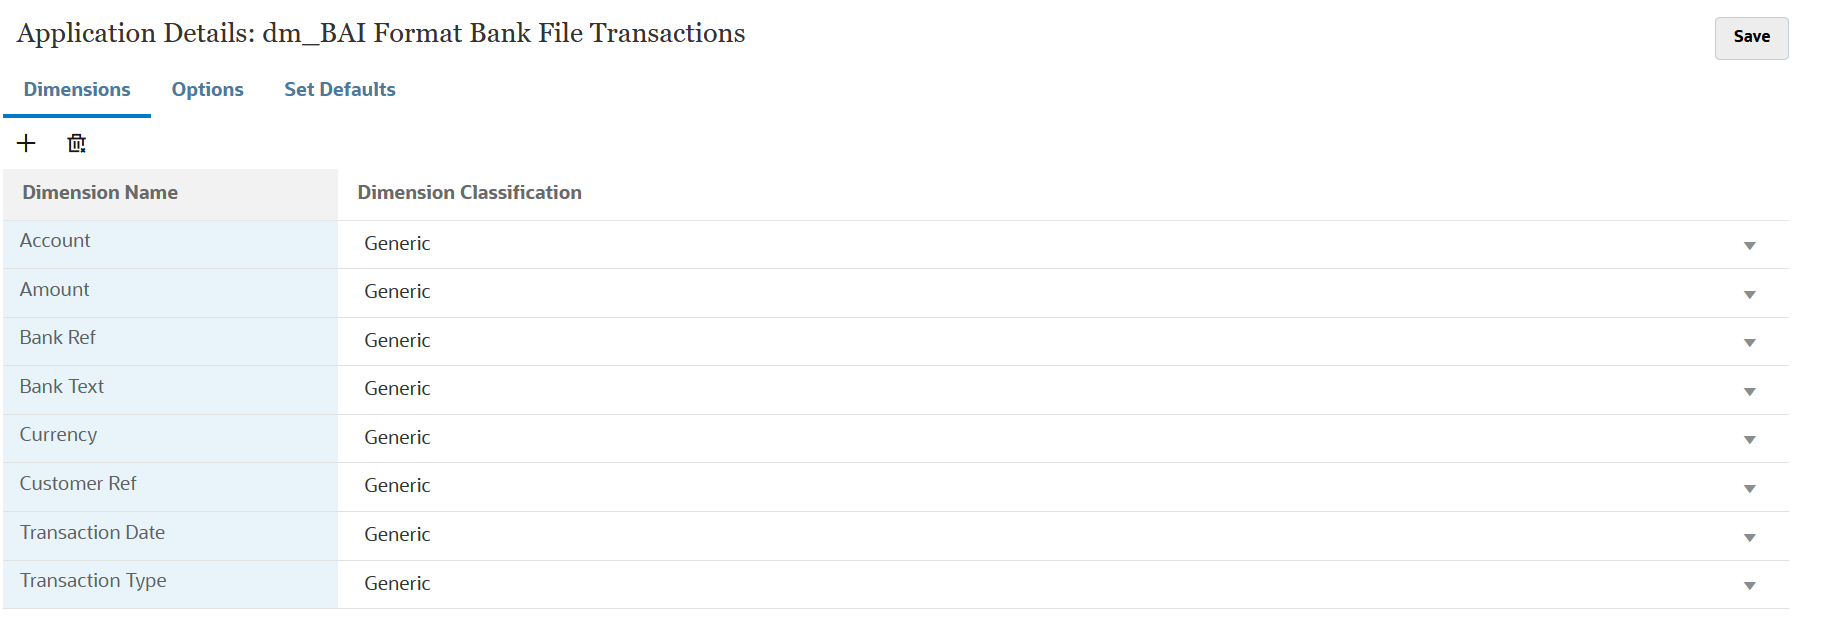 En la imagen se muestran los detalles de dimensión de transacciones de archivo bancario con formato BAI